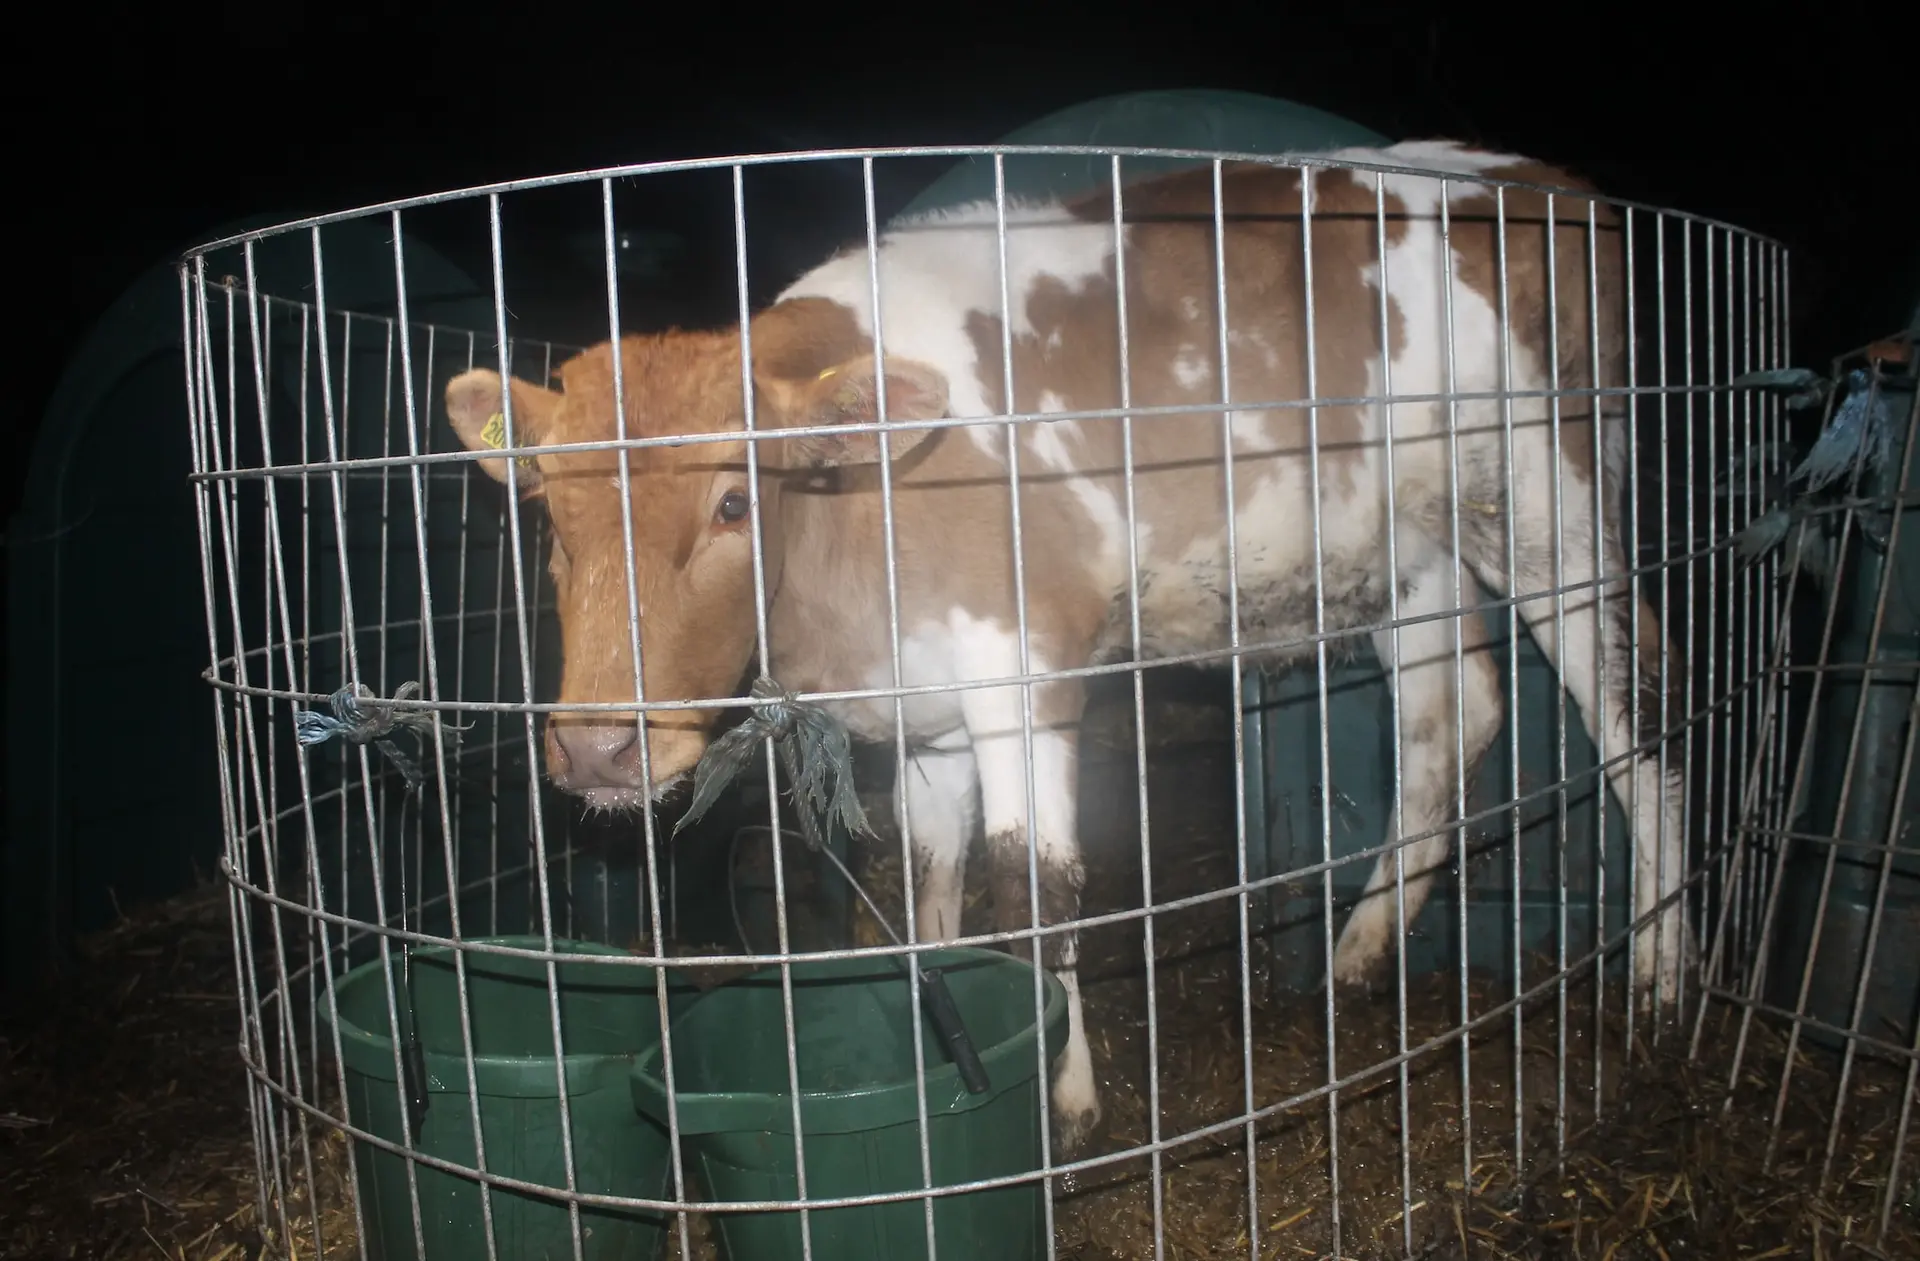 Bezerros foram encontrados enjaulados em situações ilegais nas fazendas de produtos lácteos do Reino Unido (Foto: Viva!)